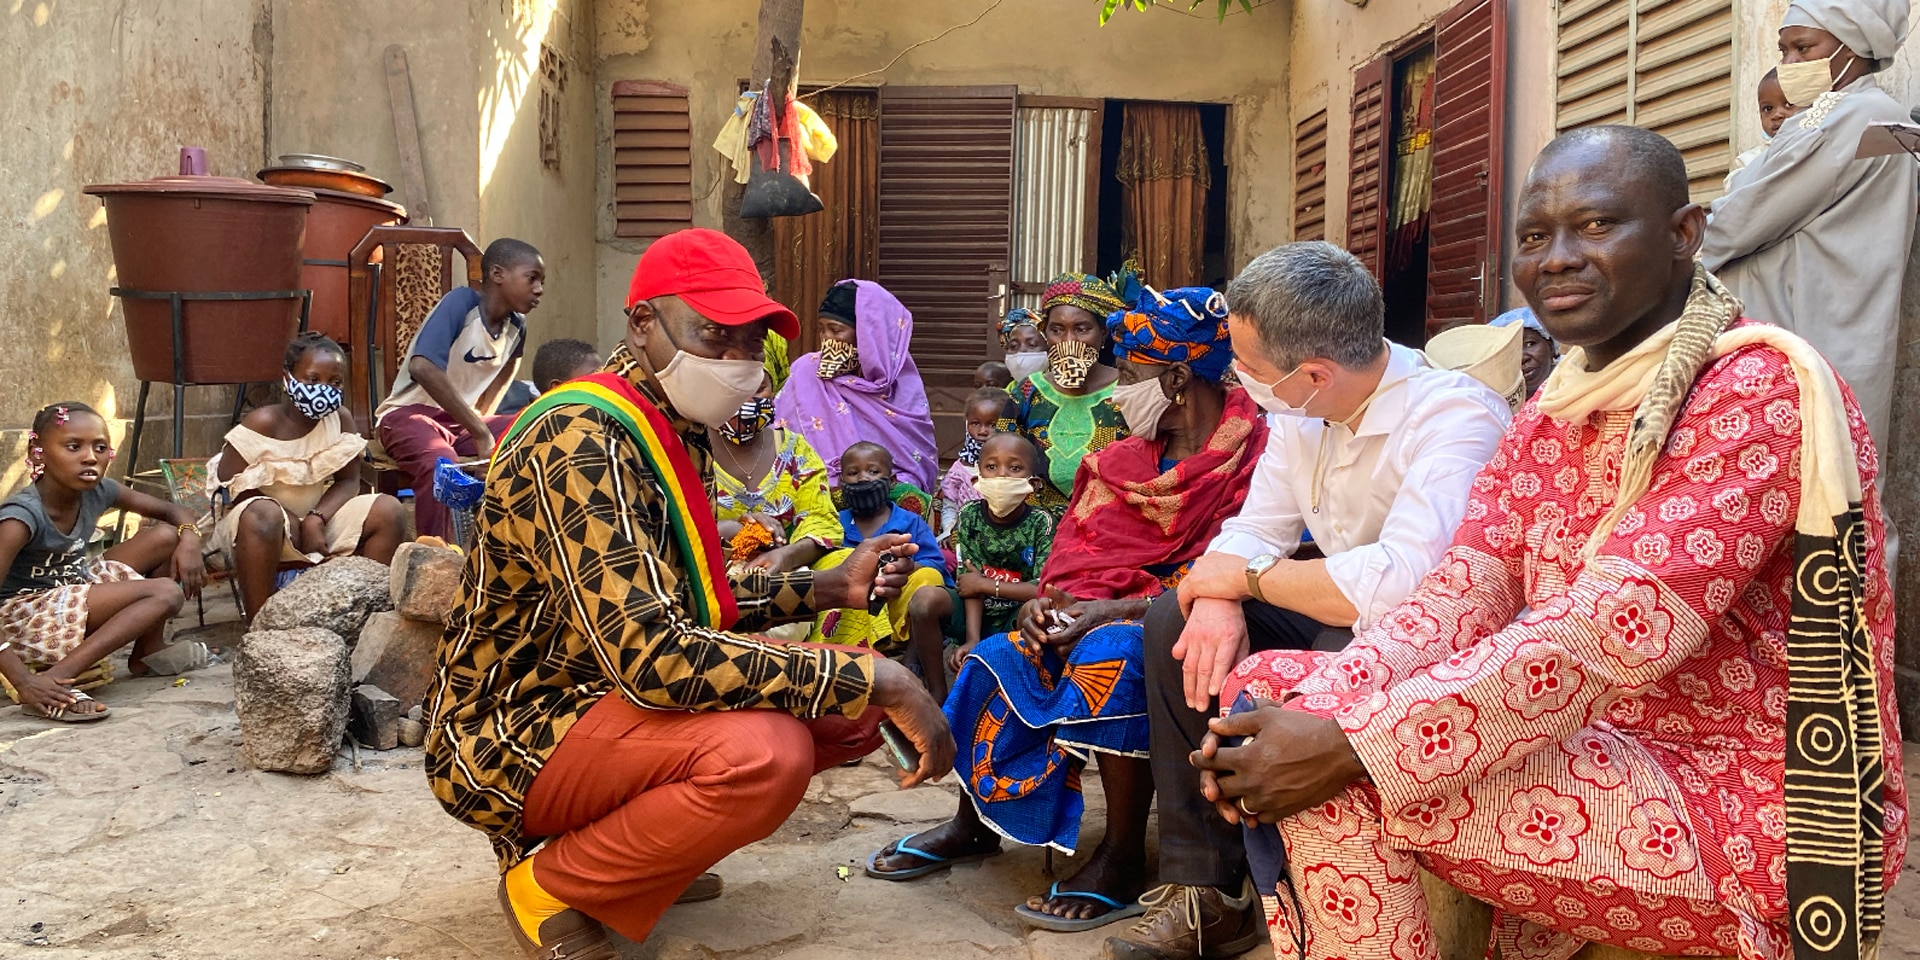 Aussenminister Cassis sitzt vor einem Haus im Kreis von afrikanischen Gesprächspartnern, Frauen, Männern und Kindern.